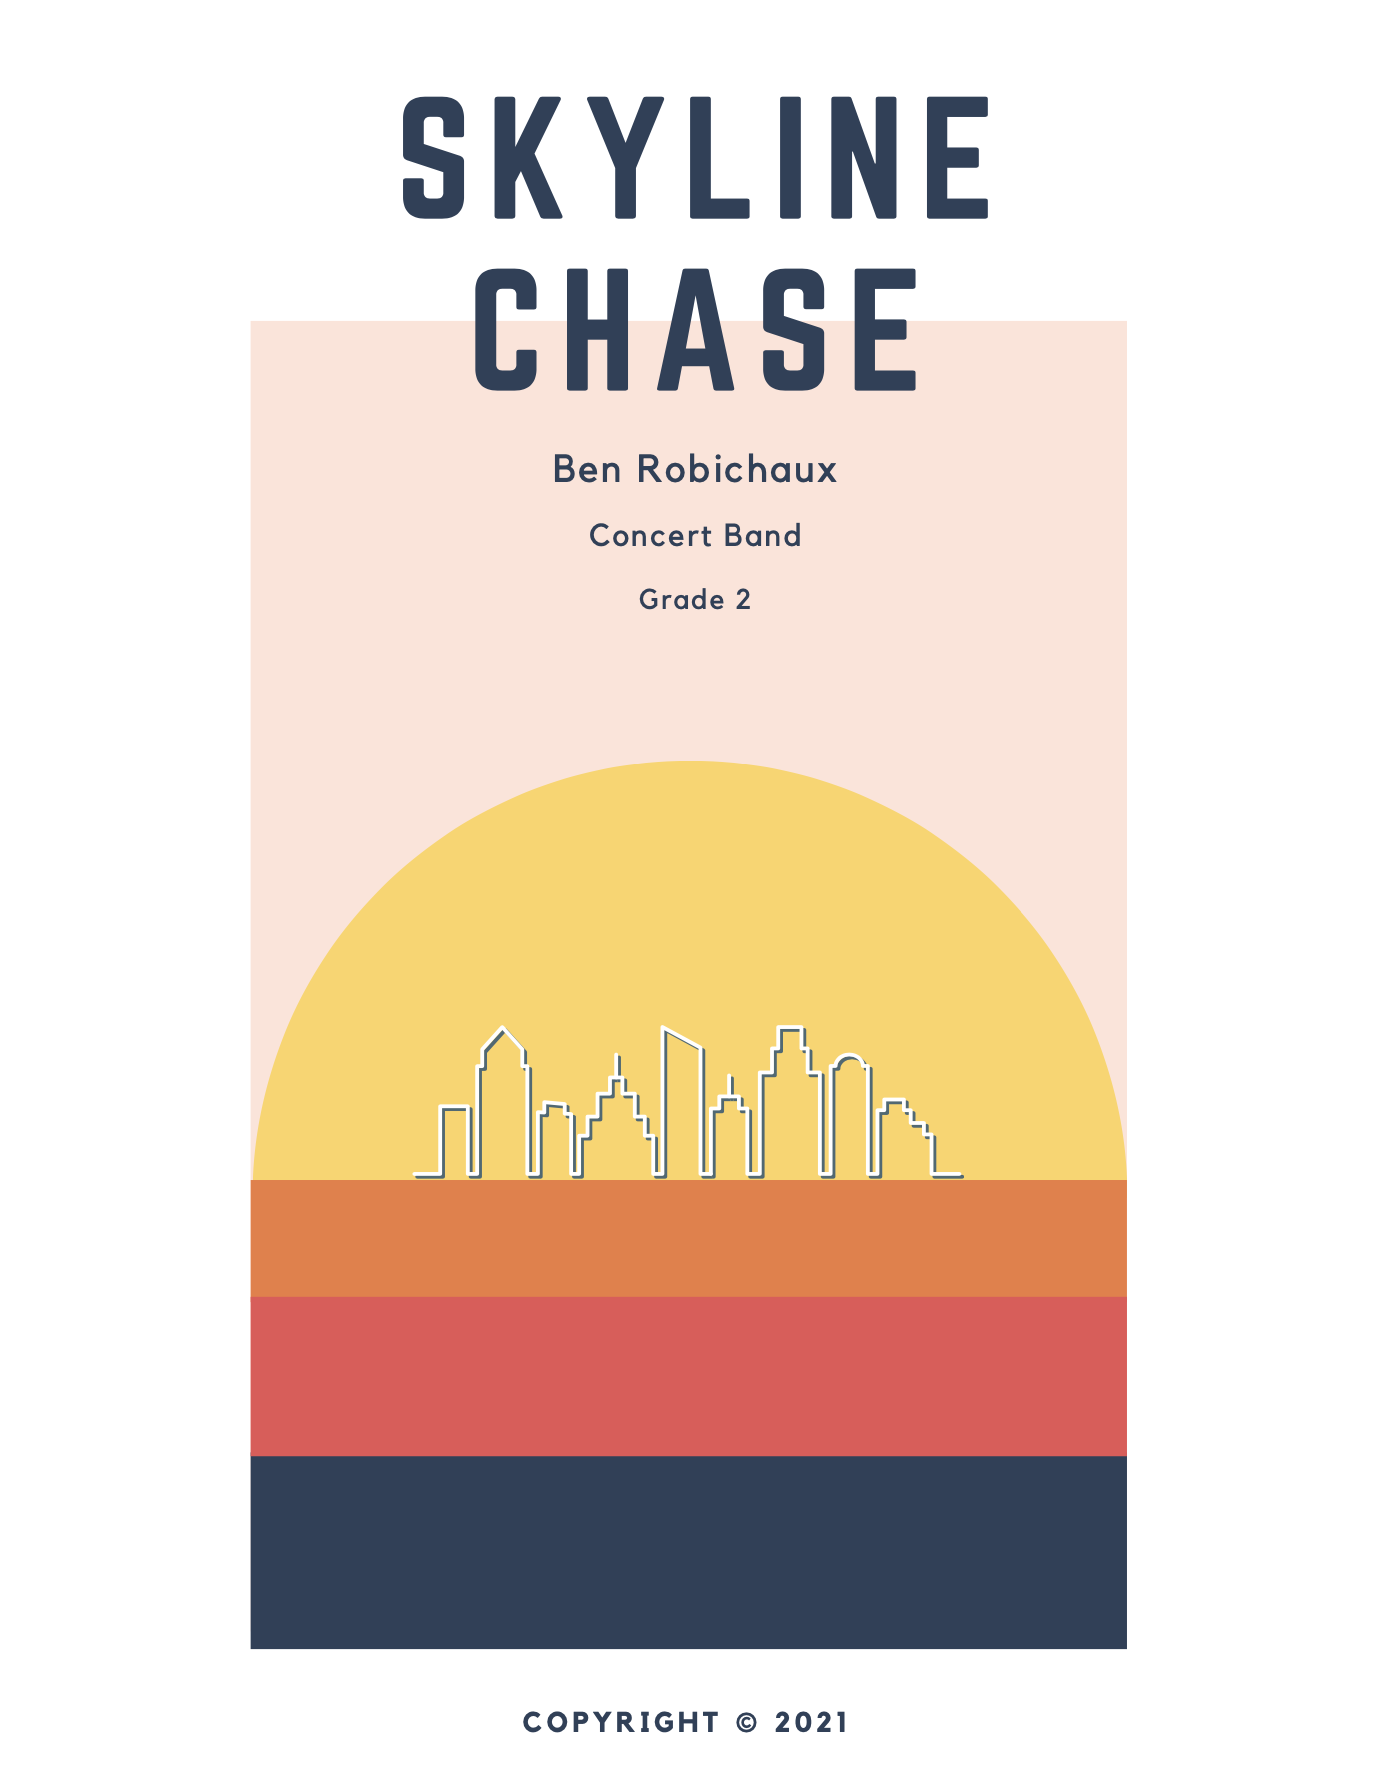 Skyline Chase by Ben Robichaux